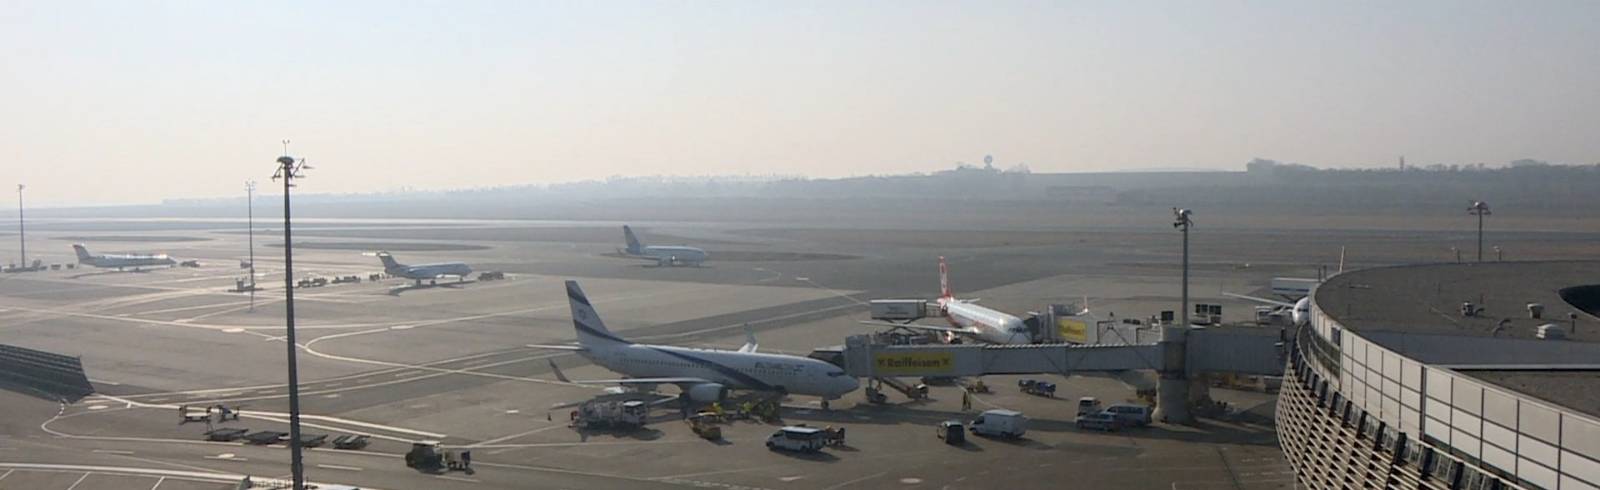 Bilanz: Flughafen blickt auf starkes Jahr zurück